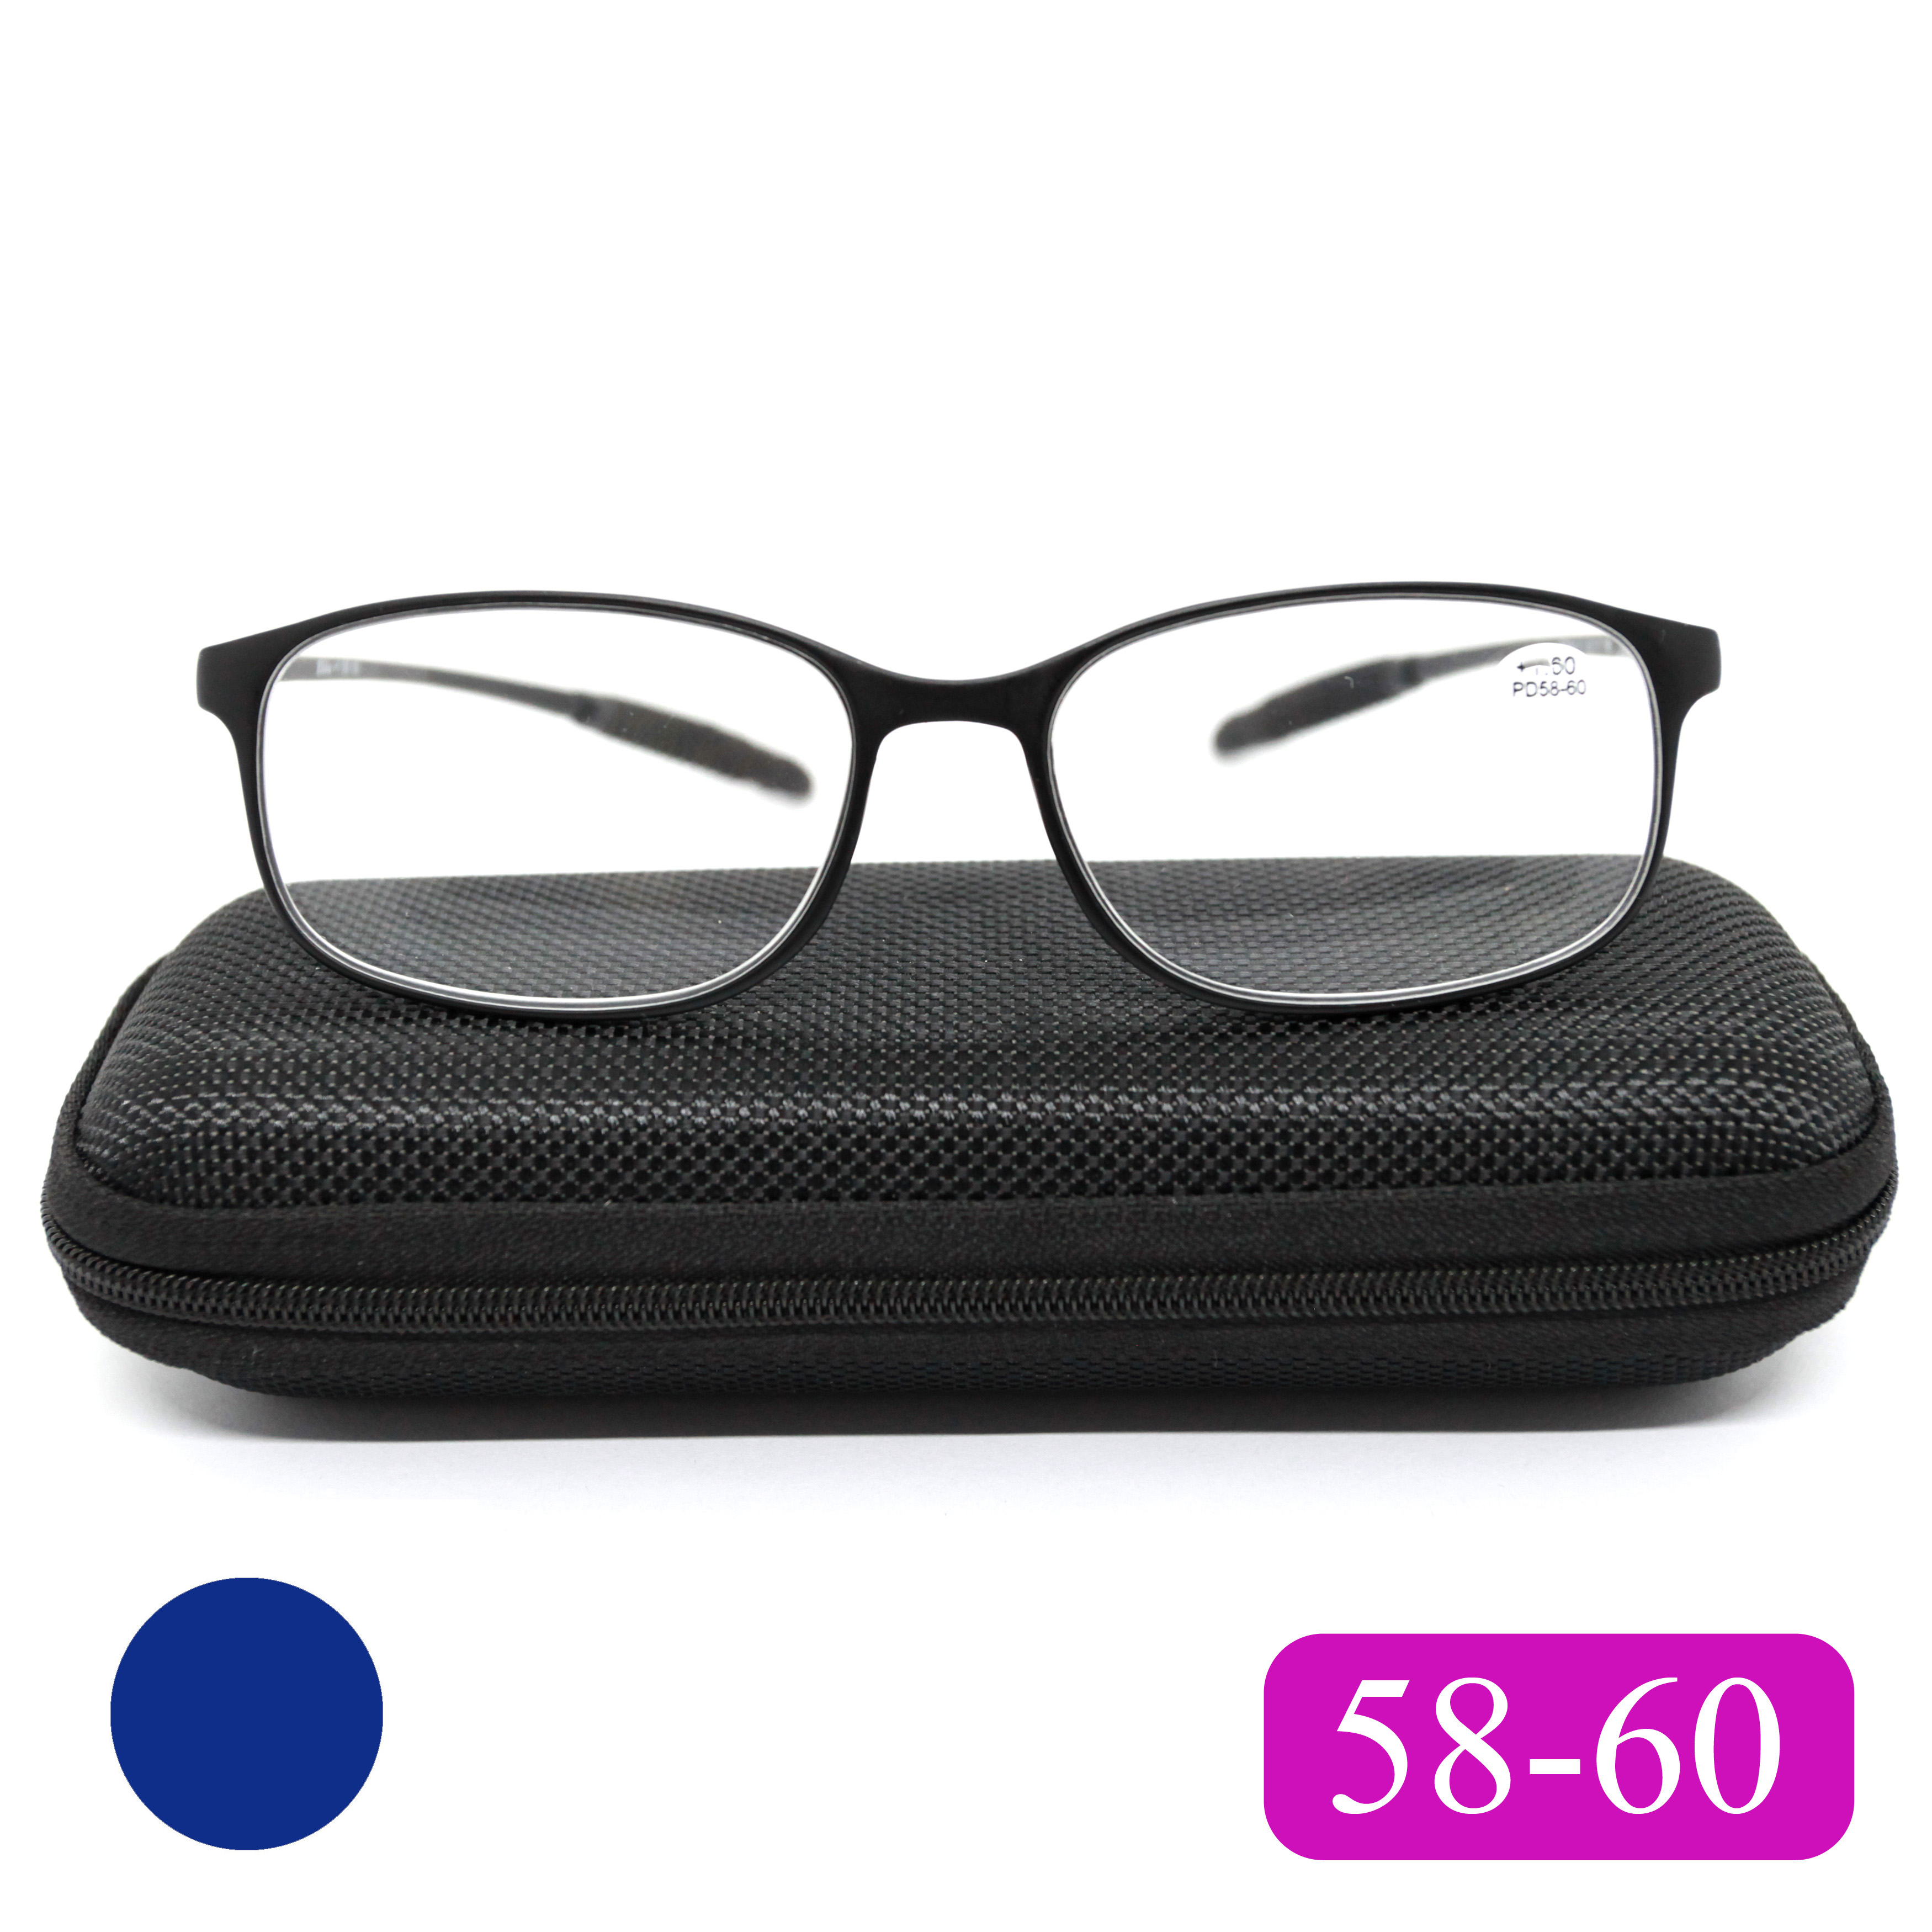 Готовые очки карбоновые TR259 +1,25, c футляром, сине-фиолетовый, РЦ 58-60